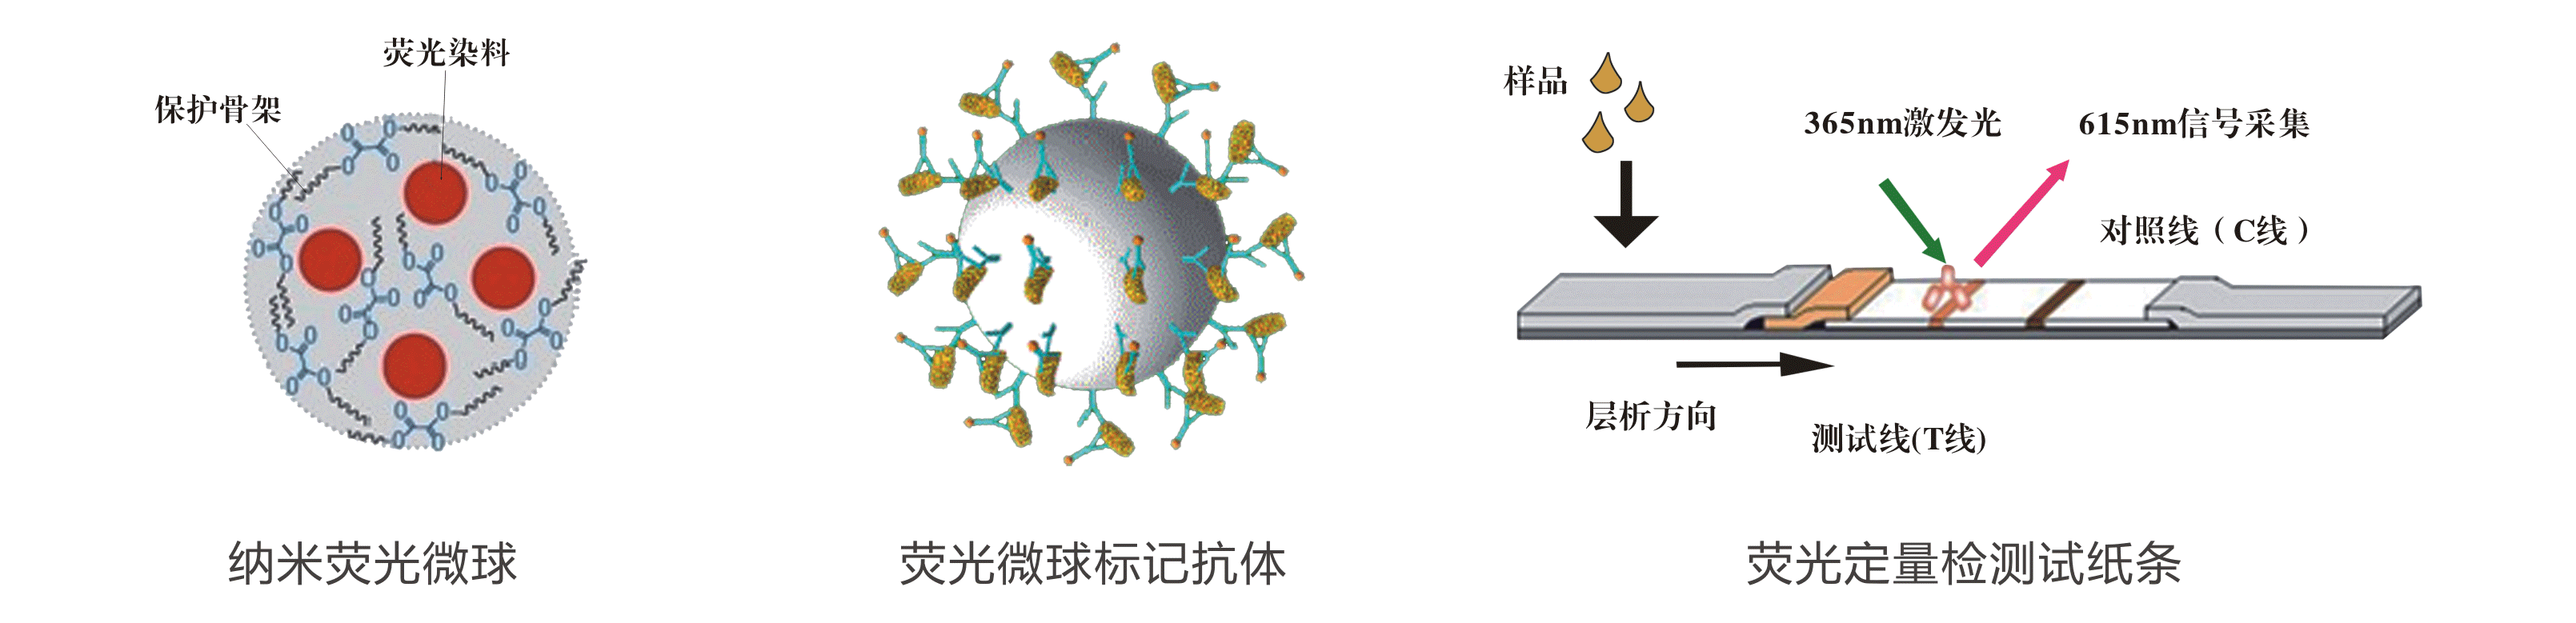 上海飞测荧光定量技术平台检测原理